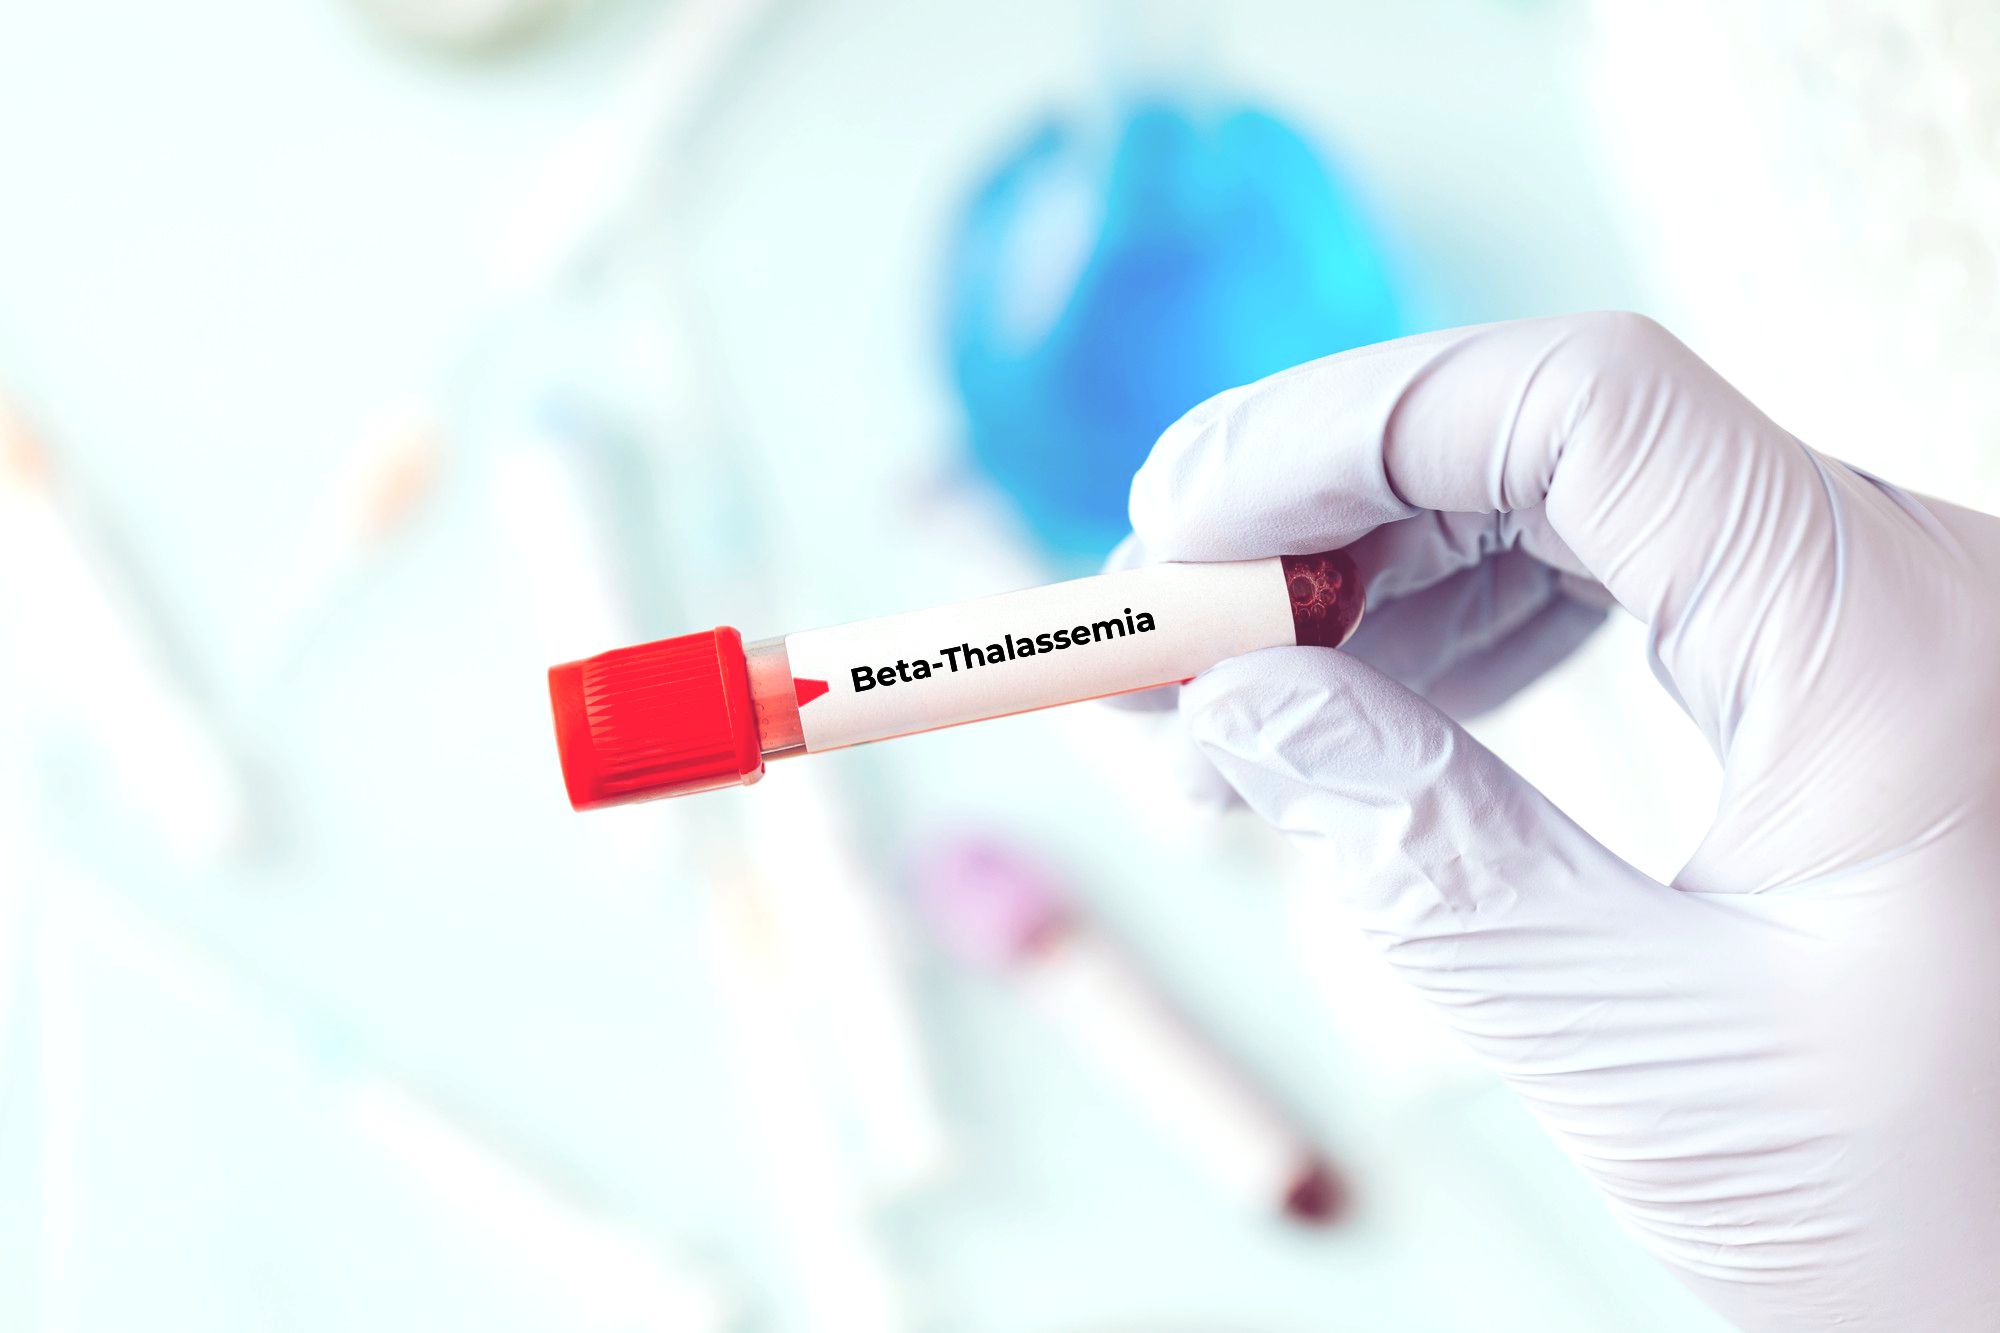 CRISPR: Novel hope for beta-thalassemia